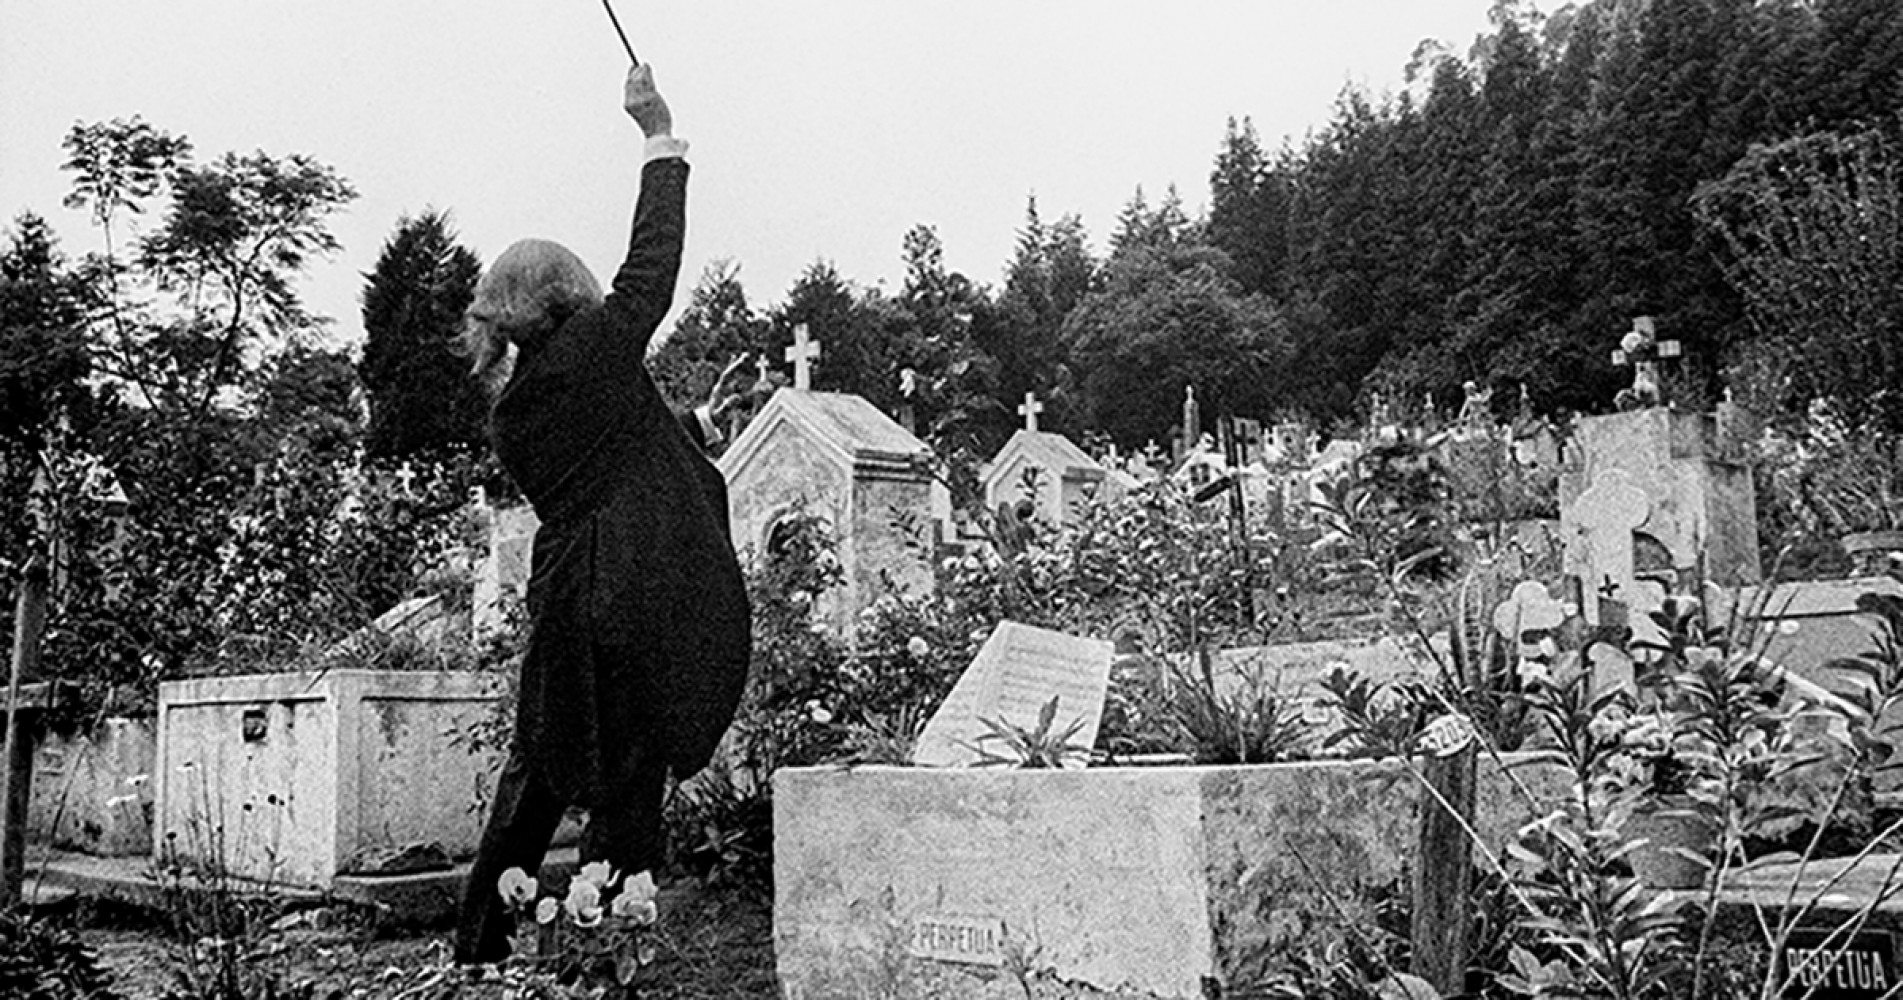 Maestro regendo túmulos em Caieiras é uma das imagens-referência do livro.